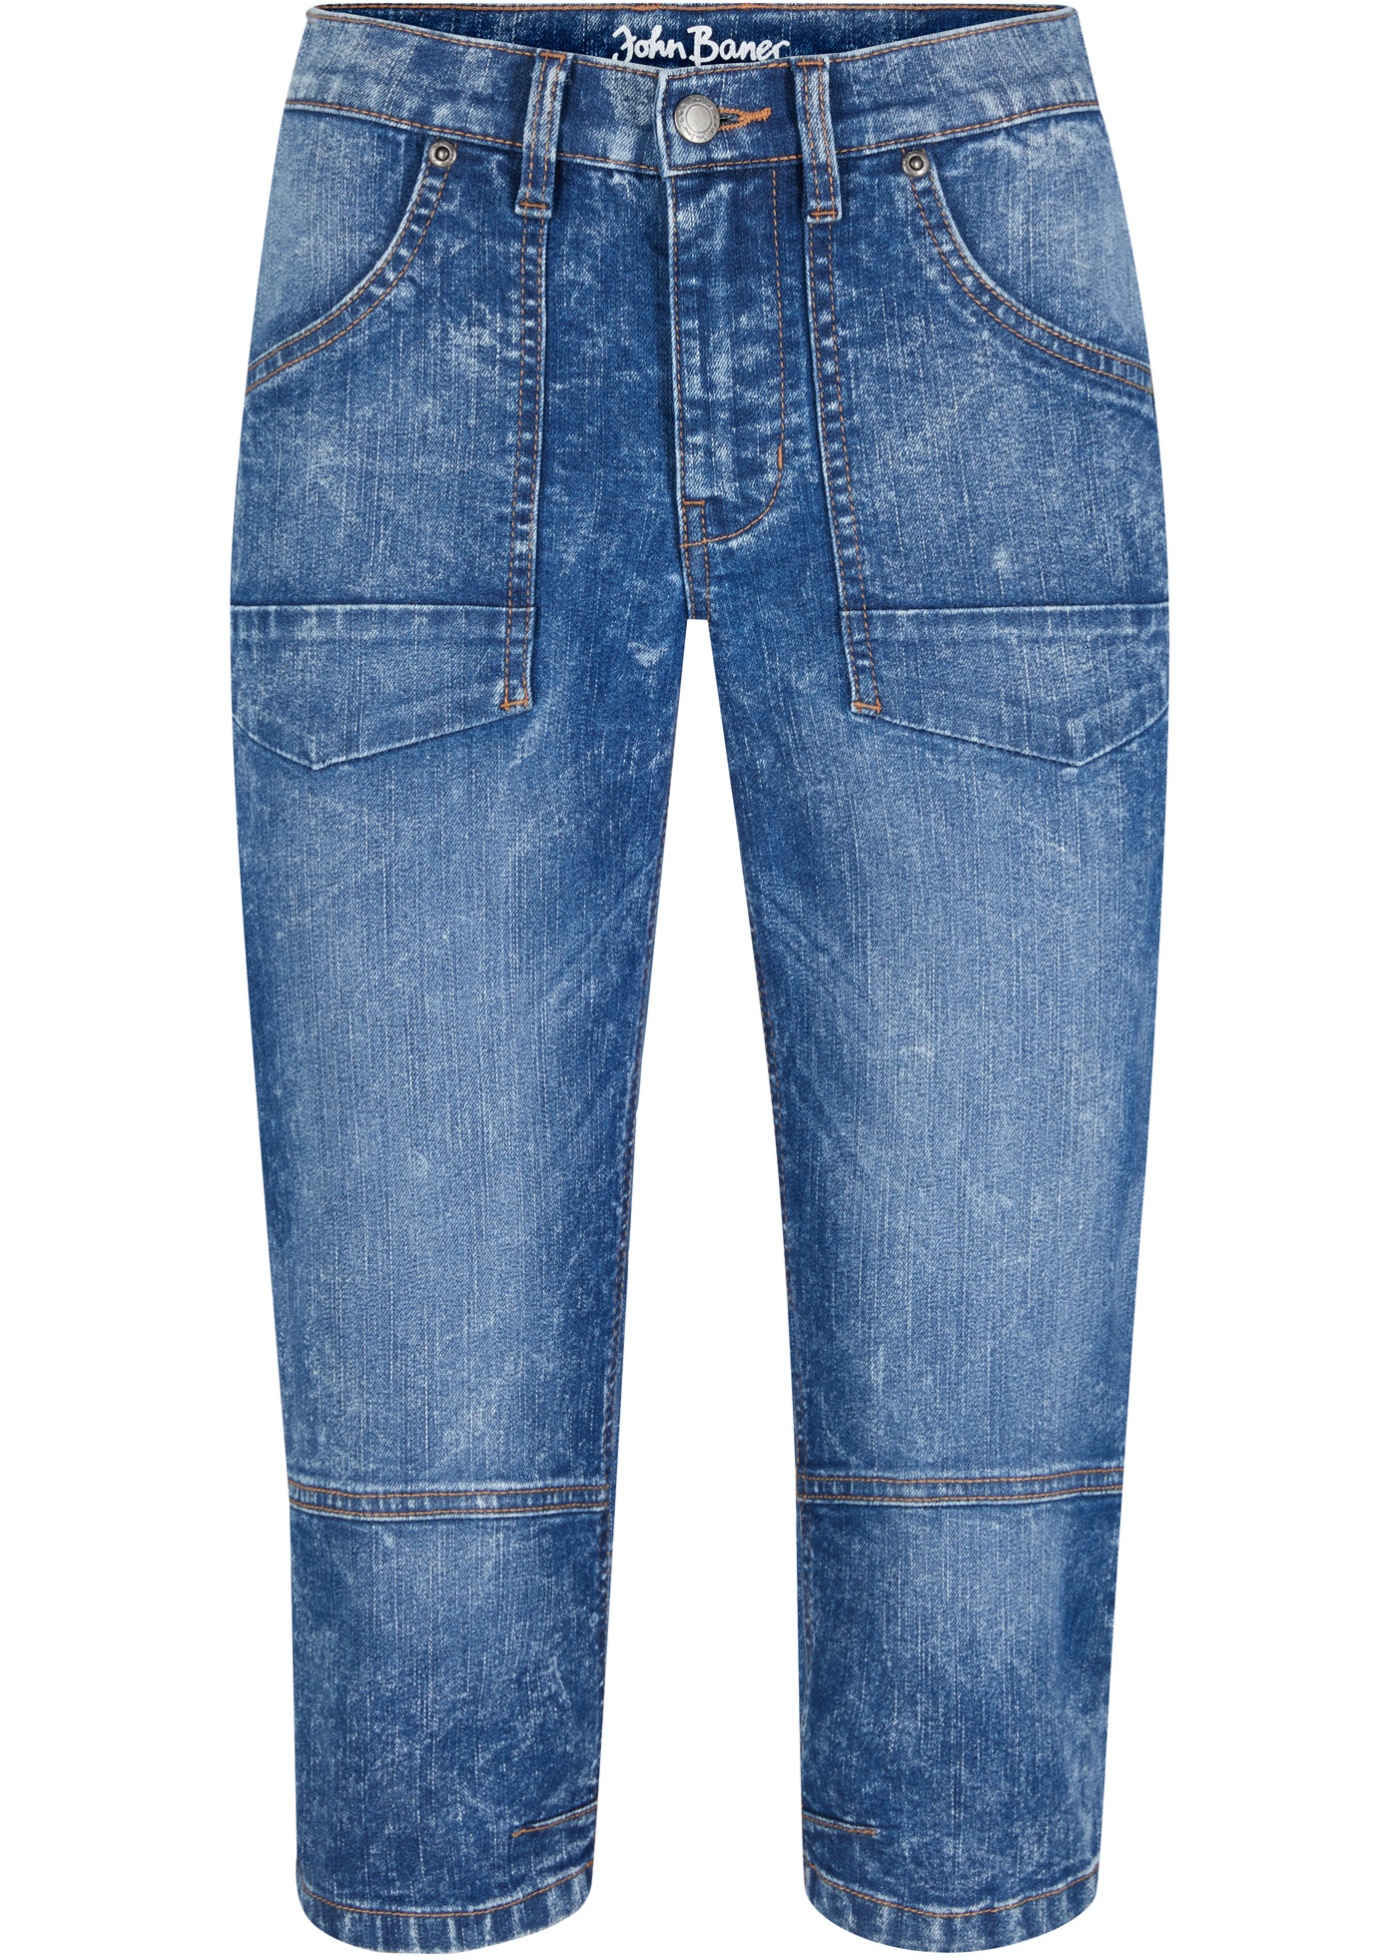 Stretch capri jeans